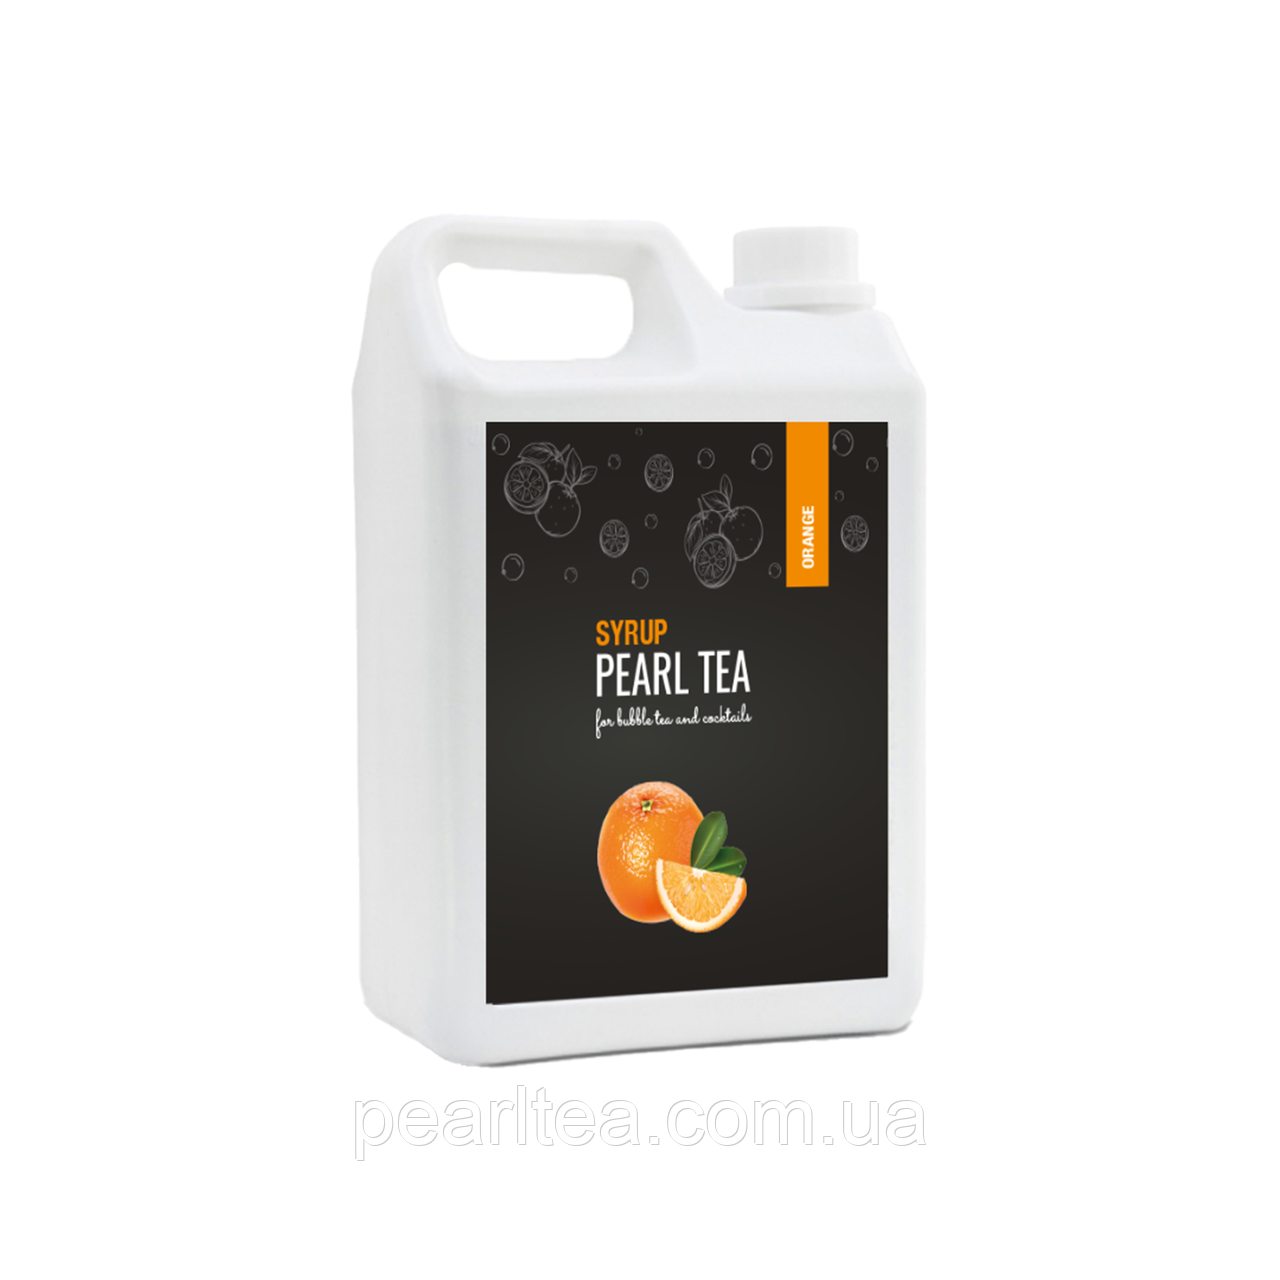 Сироп для Bubble tea Апельсин PearlTea 2.5 кг